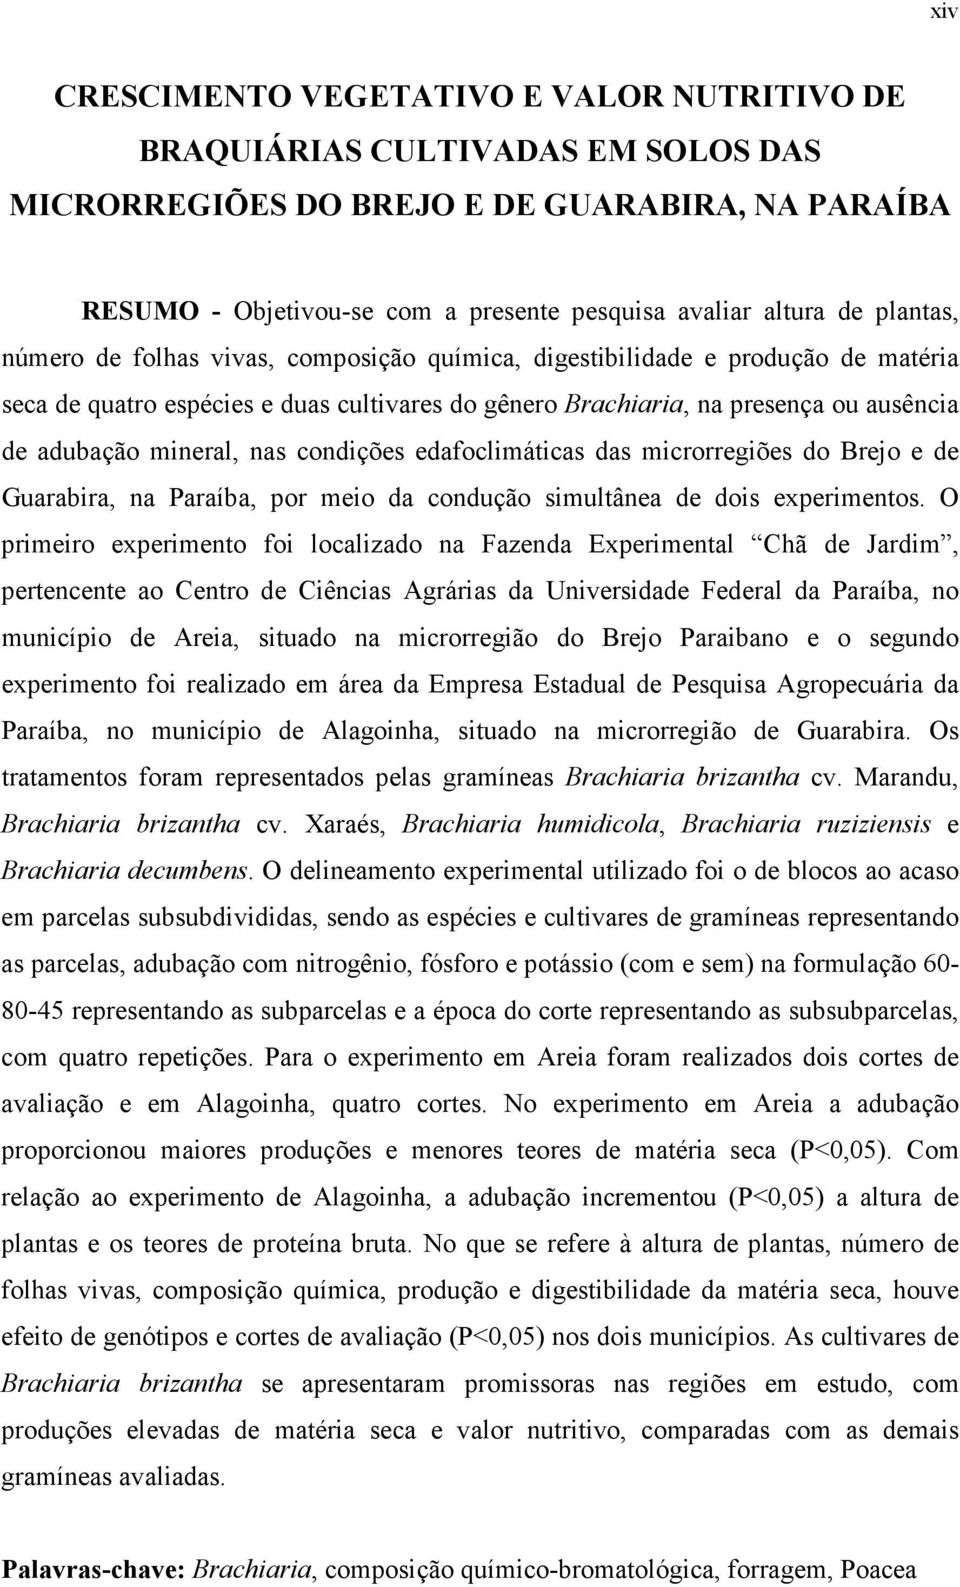 microrregiões do Brejo e de Gurir, n Prí, por meio d condução simultâne de dois experimentos.